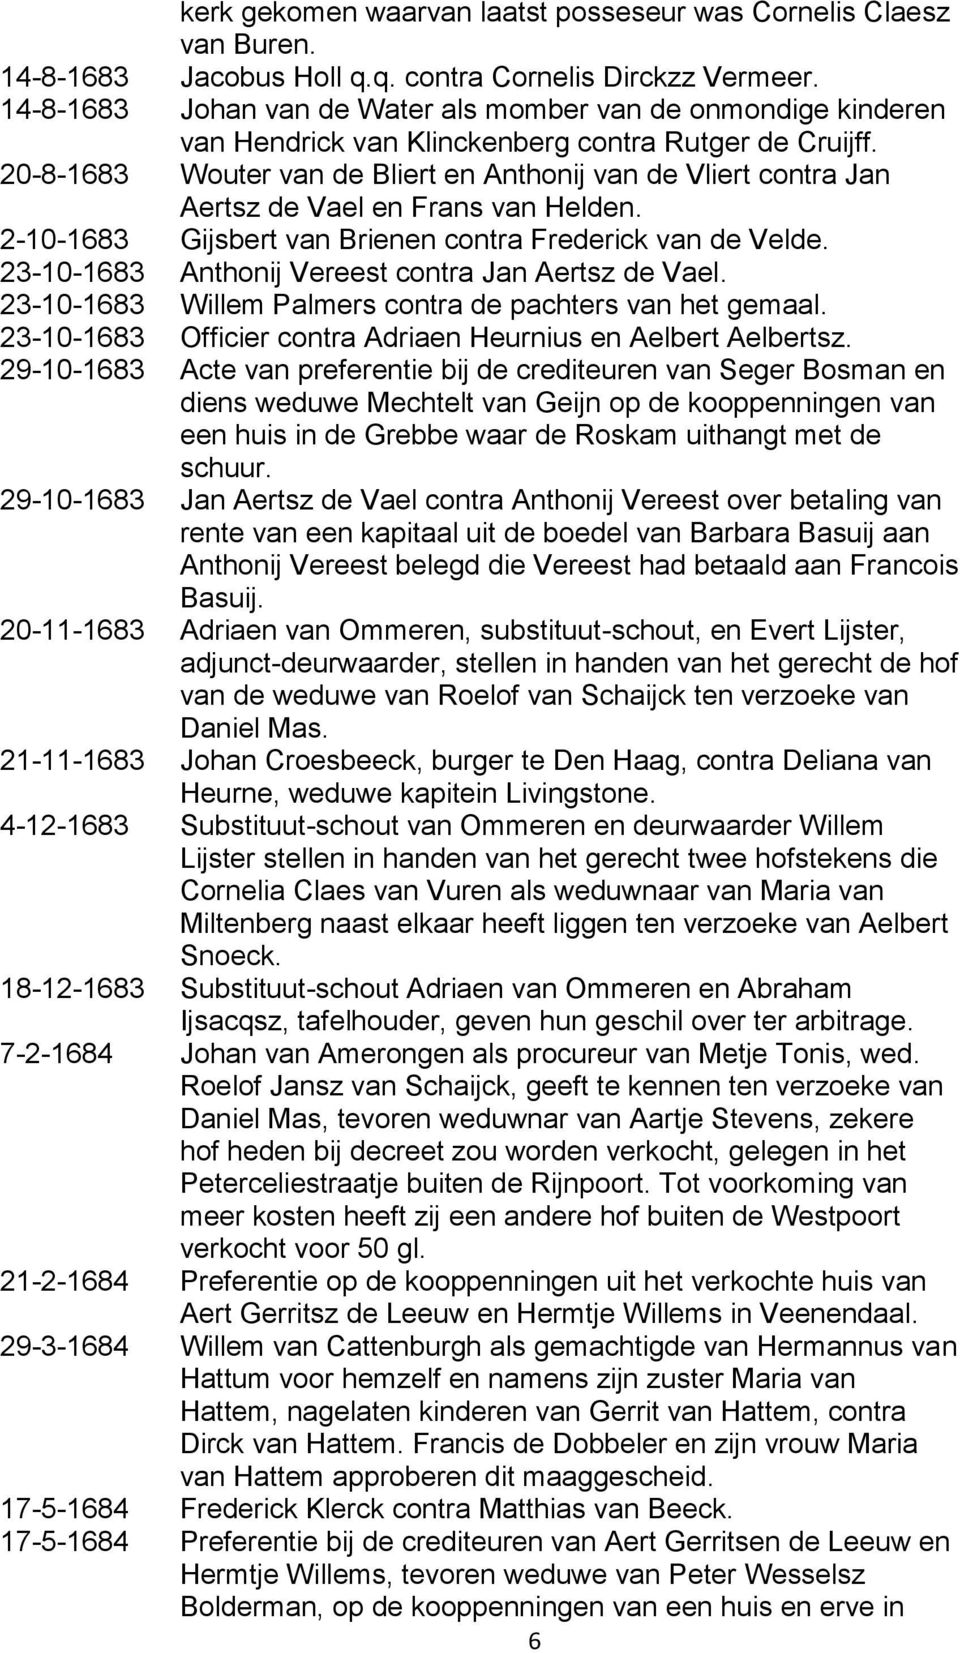 20-8-1683 Wouter van de Bliert en Anthonij van de Vliert contra Jan Aertsz de Vael en Frans van Helden. 2-10-1683 Gijsbert van Brienen contra Frederick van de Velde.